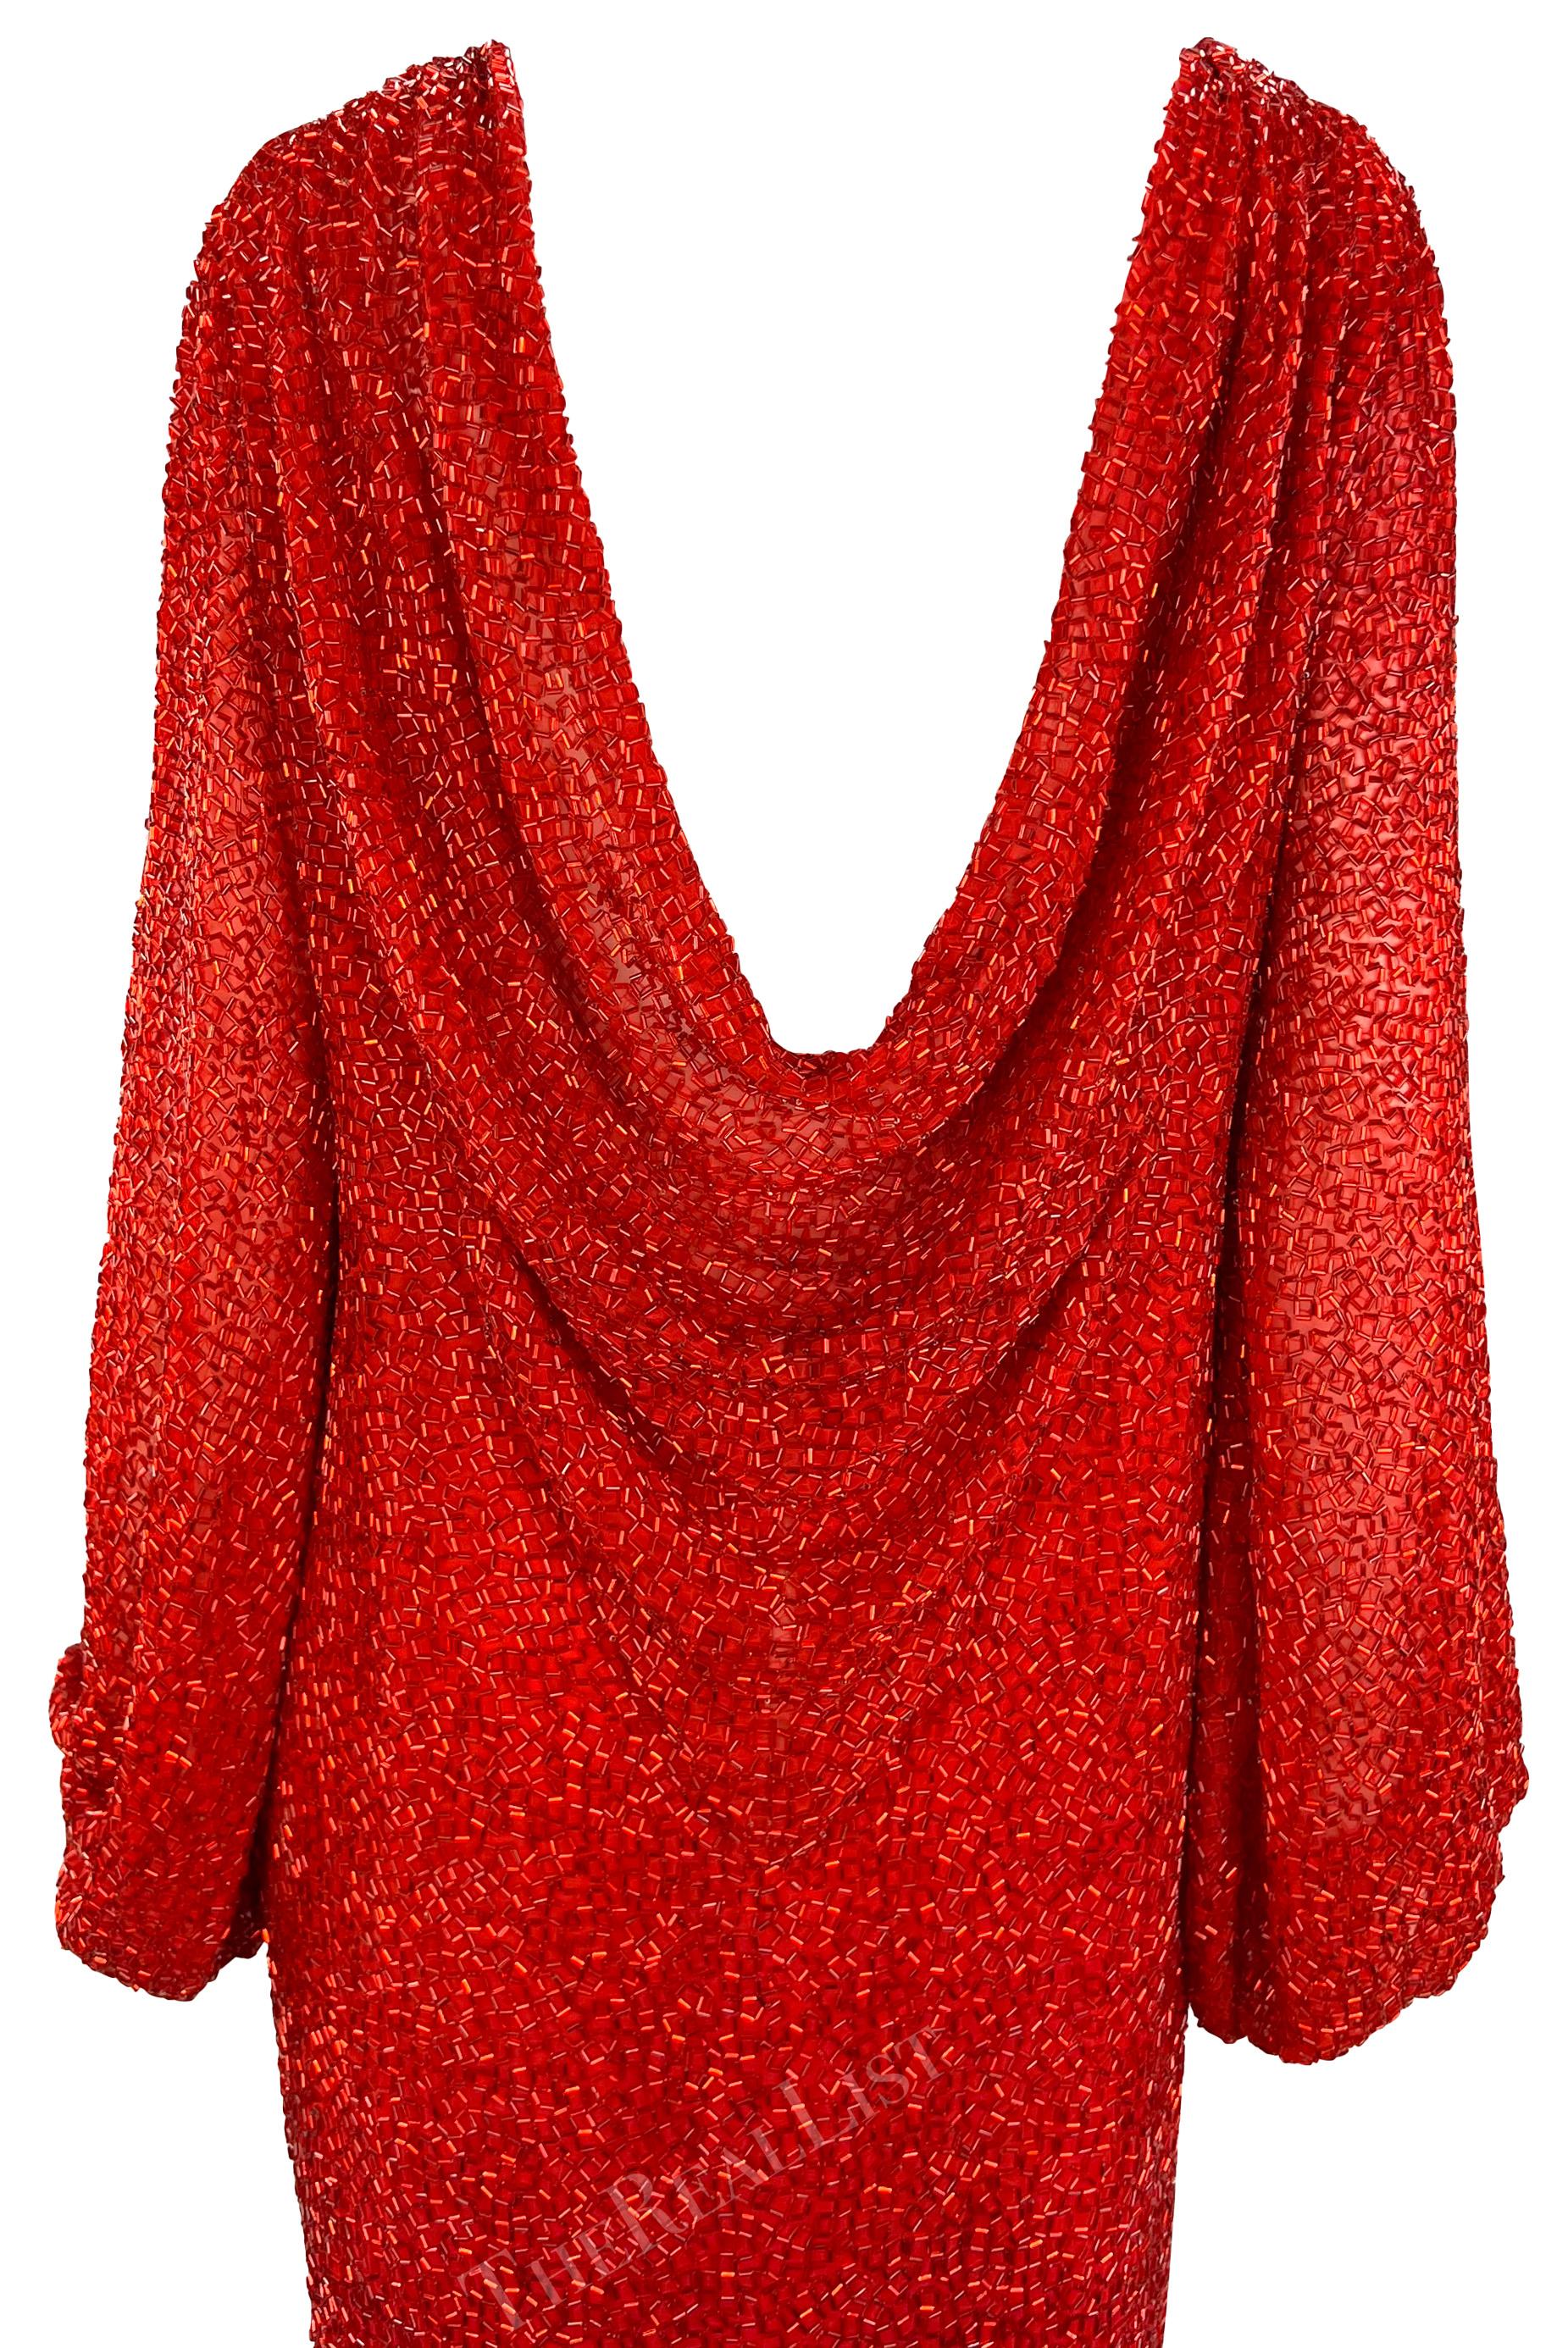 Aus den frühen 1980er Jahren stammt dieses unglaubliche rote, mit Perlen besetzte Bob Mackie-Kleid, das komplett mit glänzenden roten Röhrenperlen bedeckt ist. Dieses bodenlange Kleid hat Glockenärmel, einen hohen Schlitz an einer Seite und einen